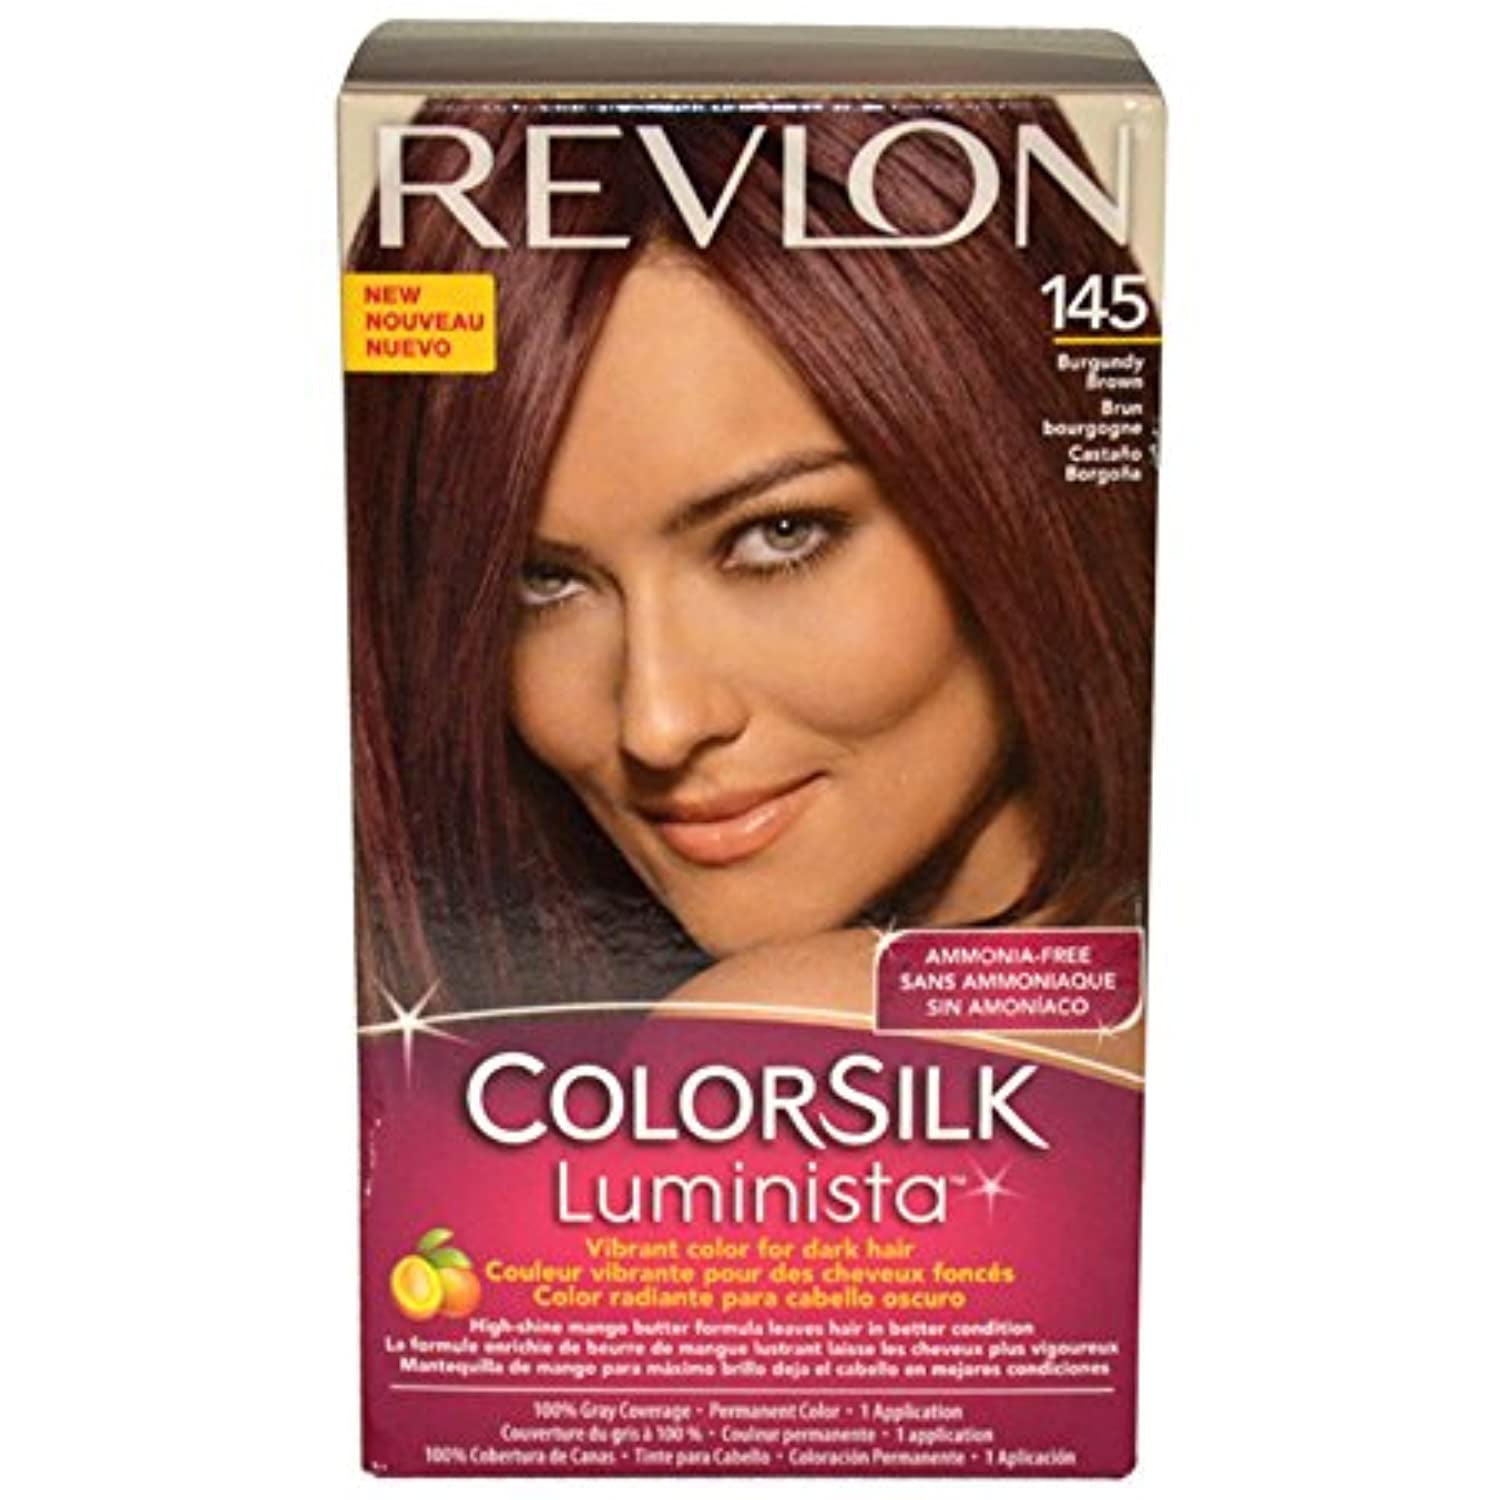 REV-80452 Revlon145 Colorsilk Luminista Haircolor Burgundy Brown Pack of 1